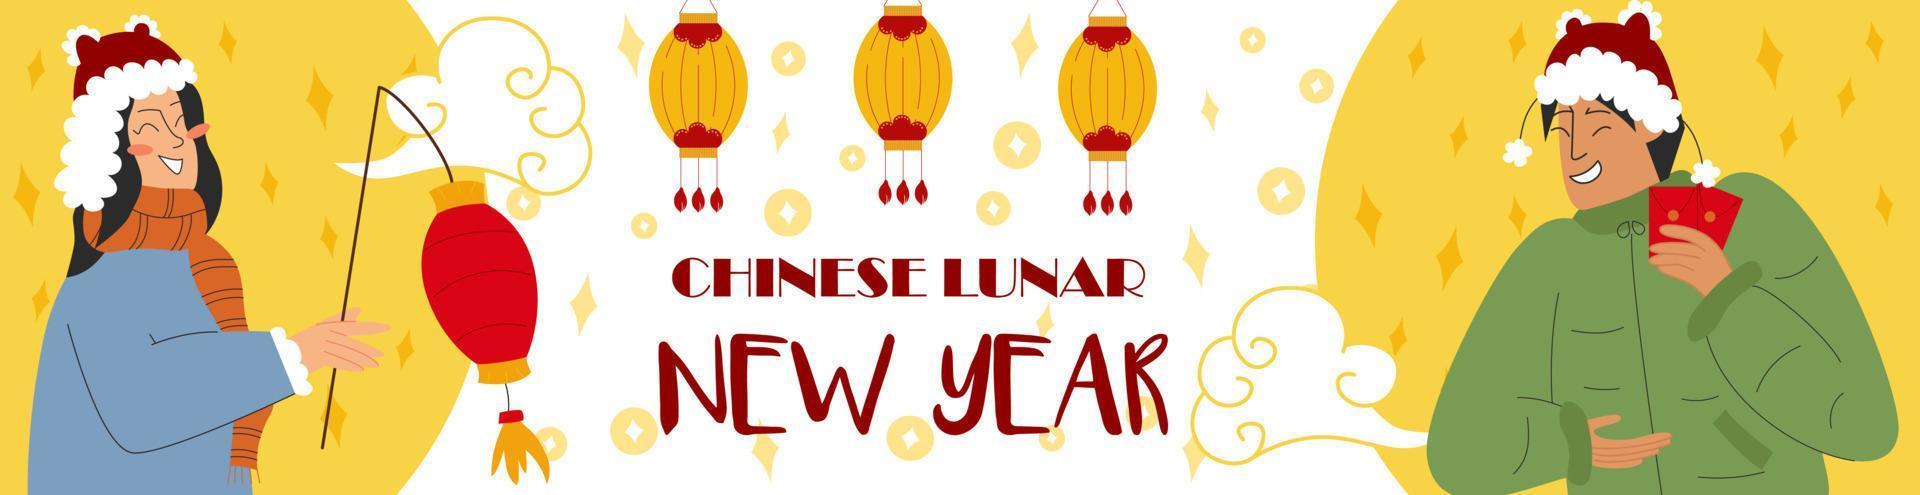 projeto de banner da web do ano novo lunar chinês cultura asiática do festival da primavera. ilustração de mulher e homem em roupas de inverno com lanterna e envelope vermelho. ilustração vetorial vetor